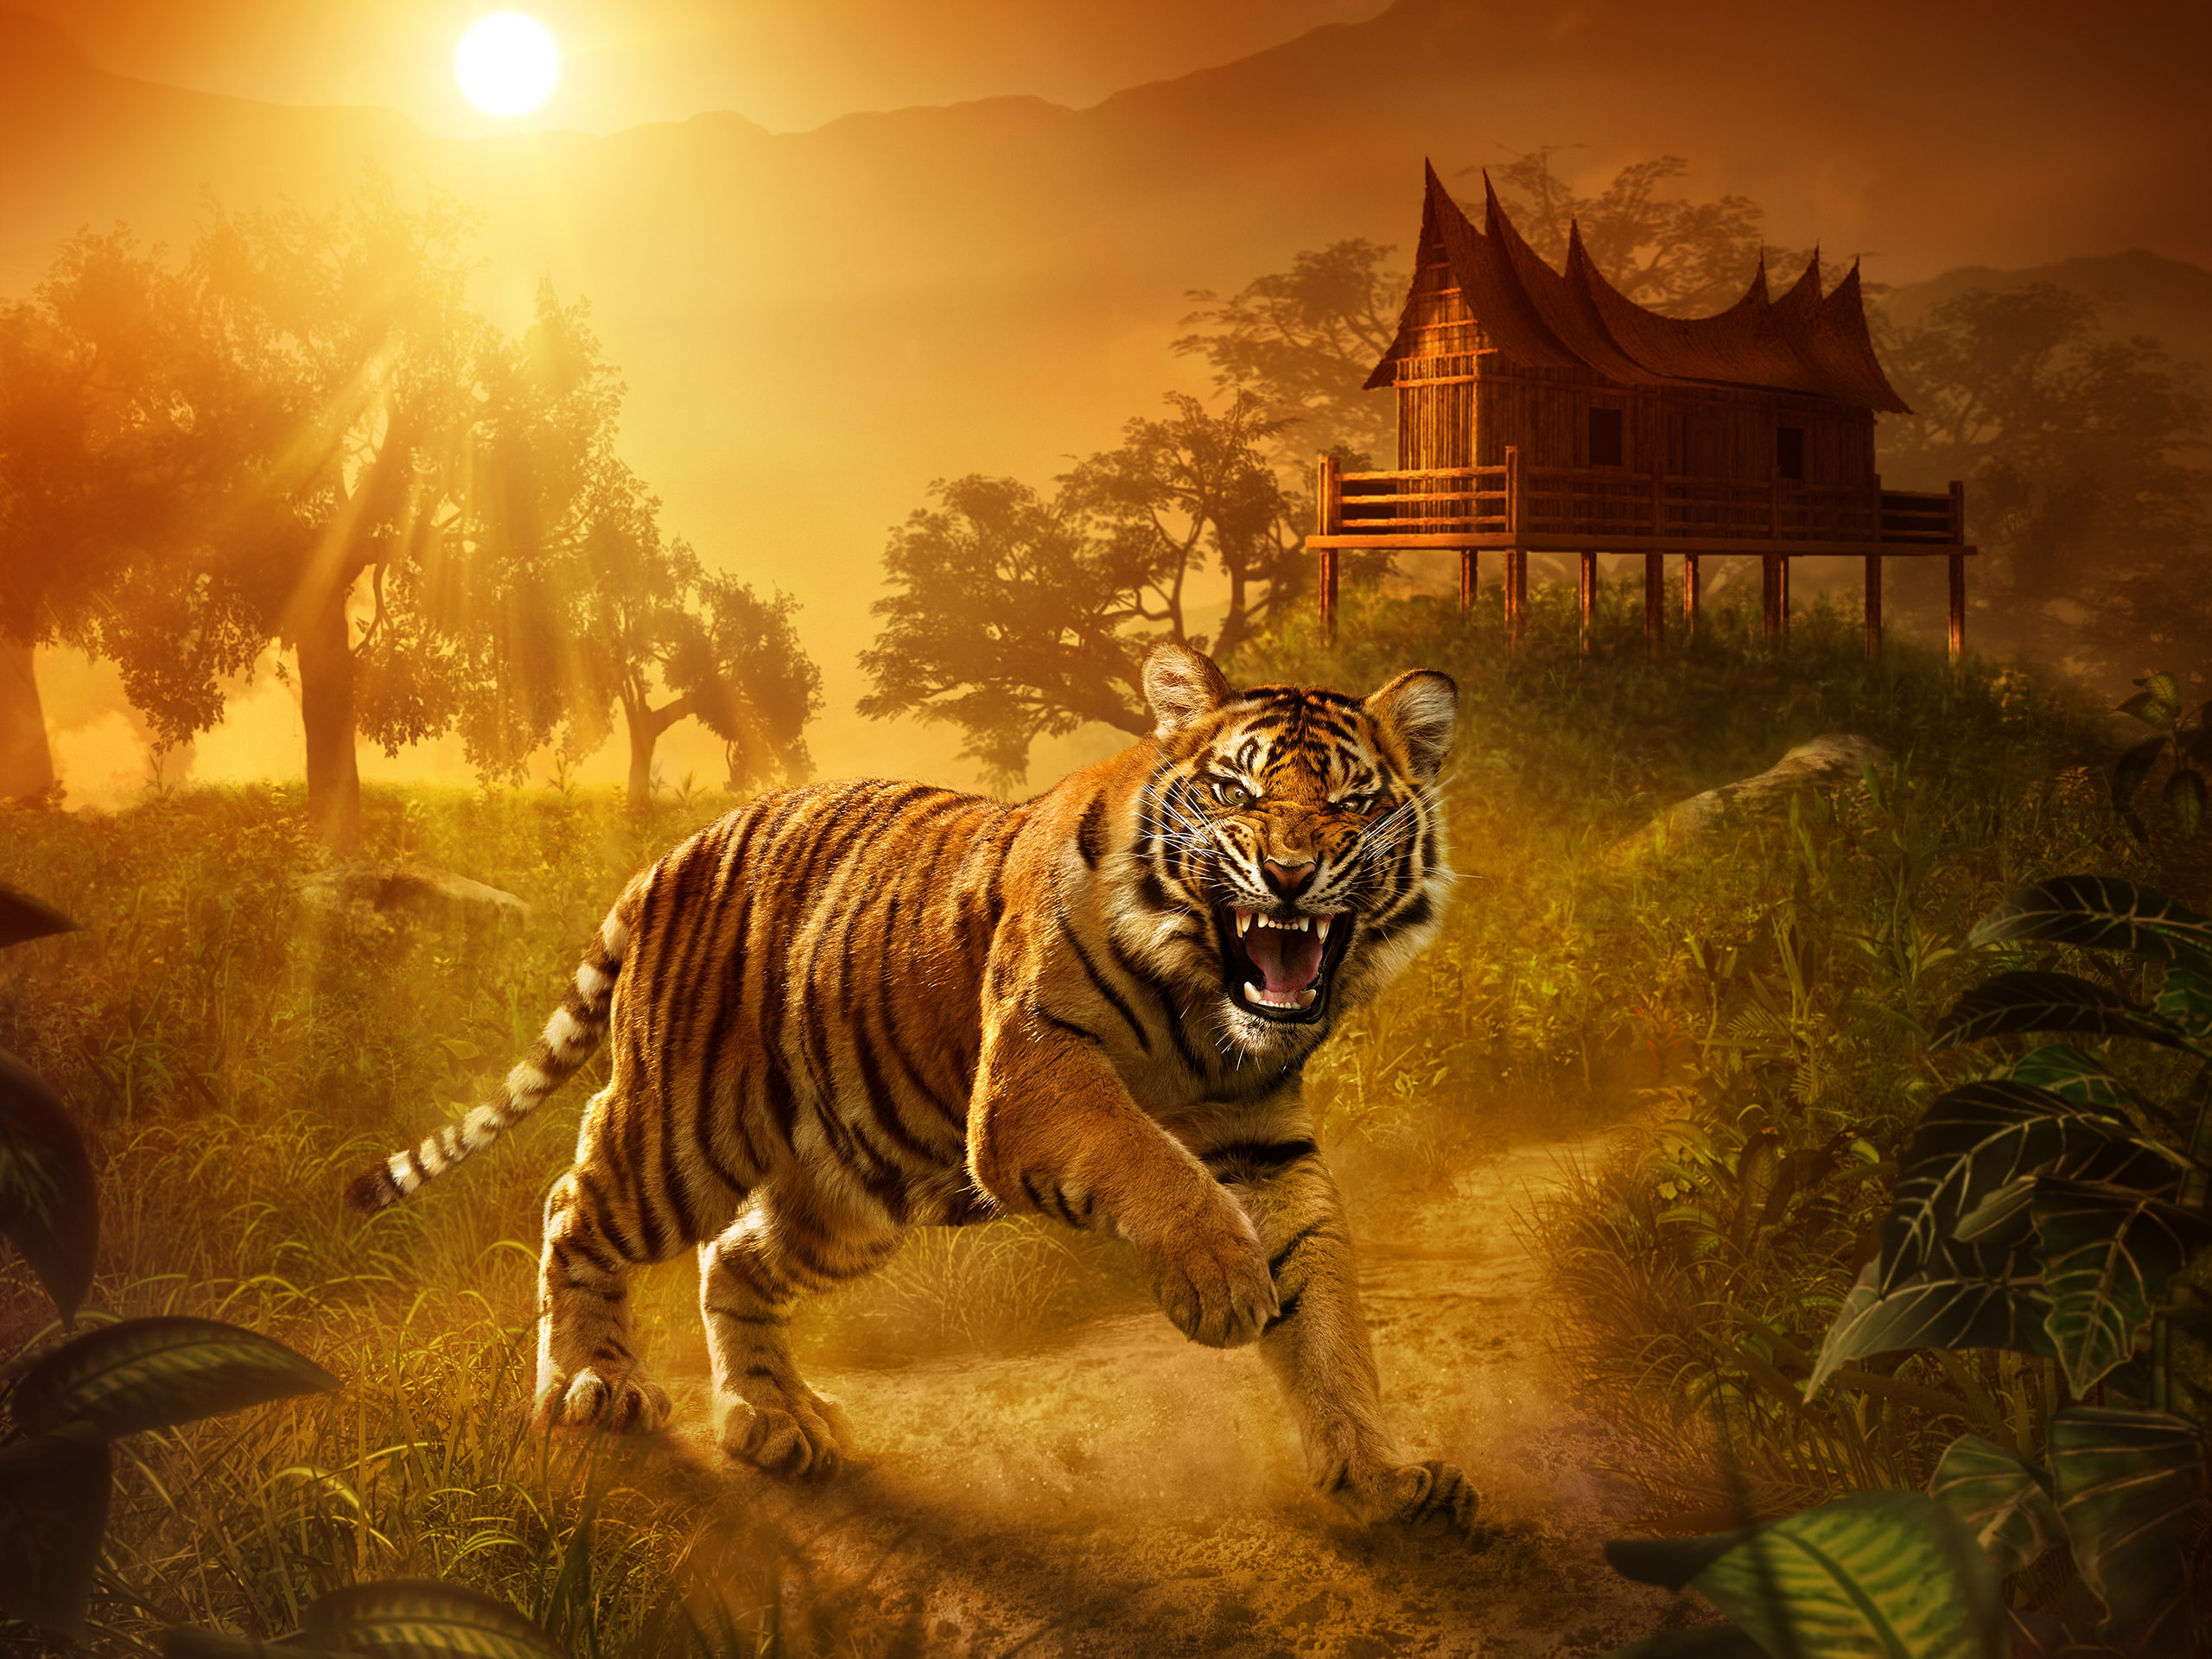 Tiger Sunlight HD, animals